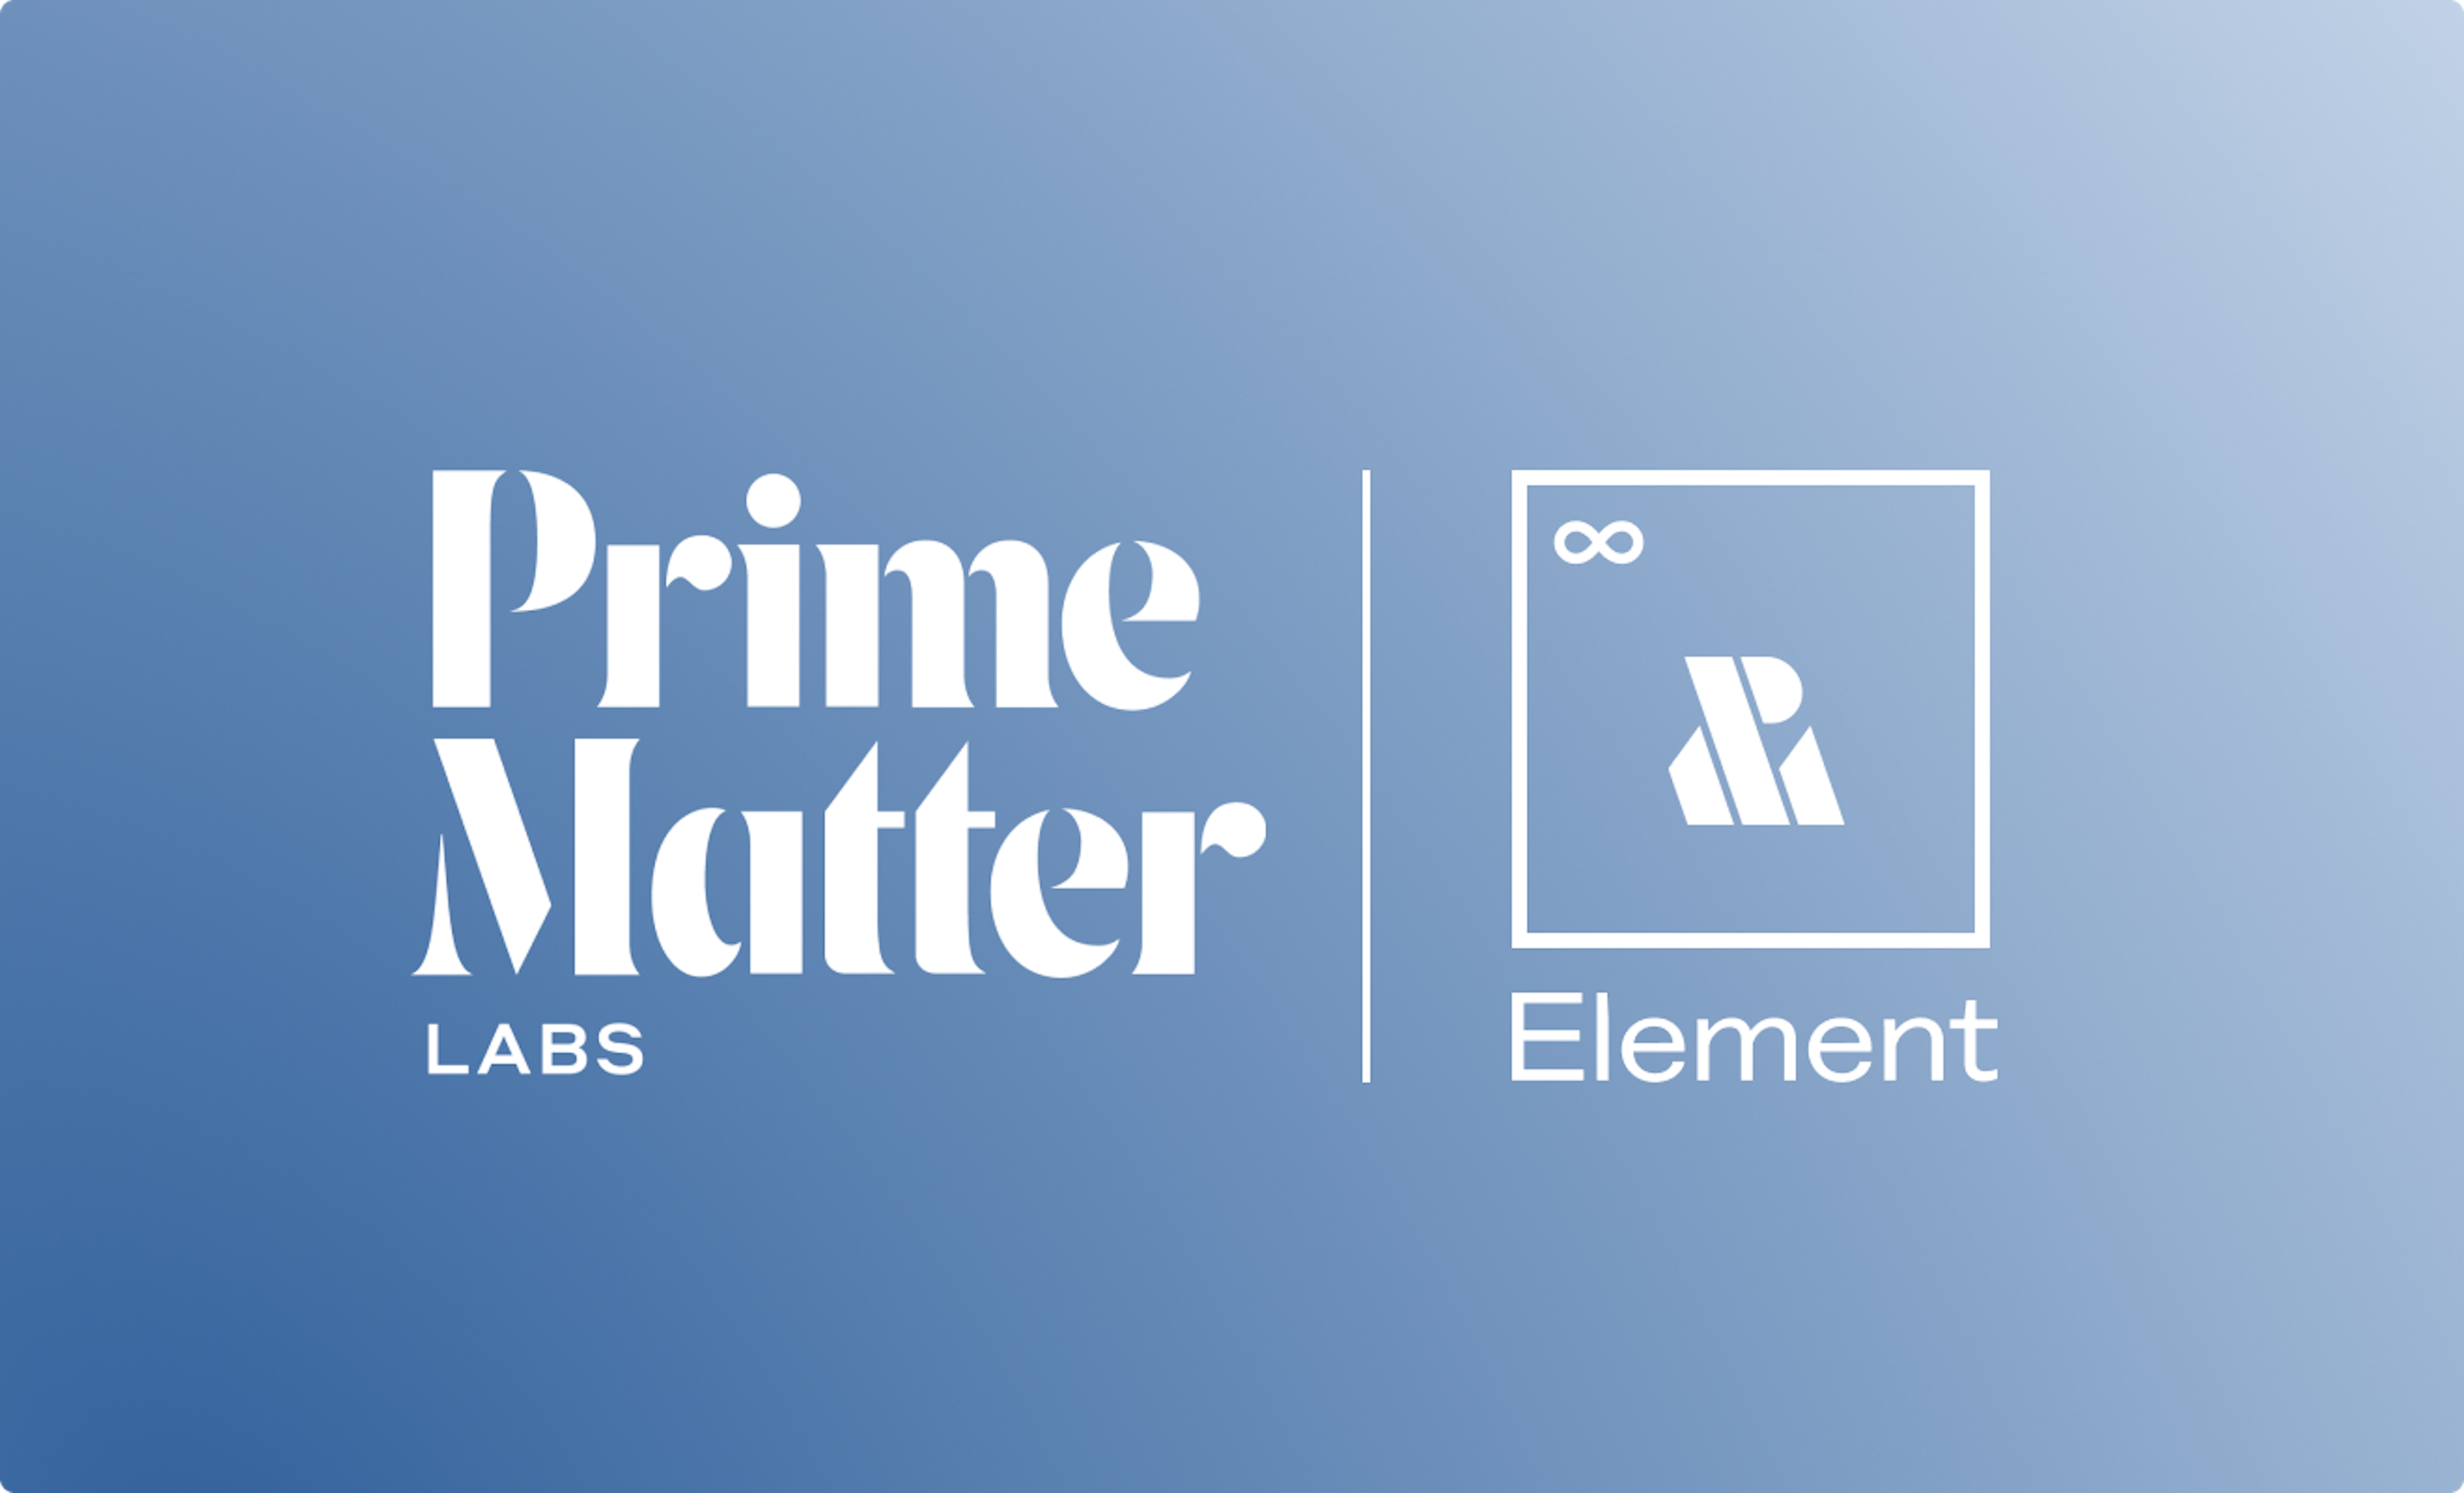 Prime Matter Labs Element Logos